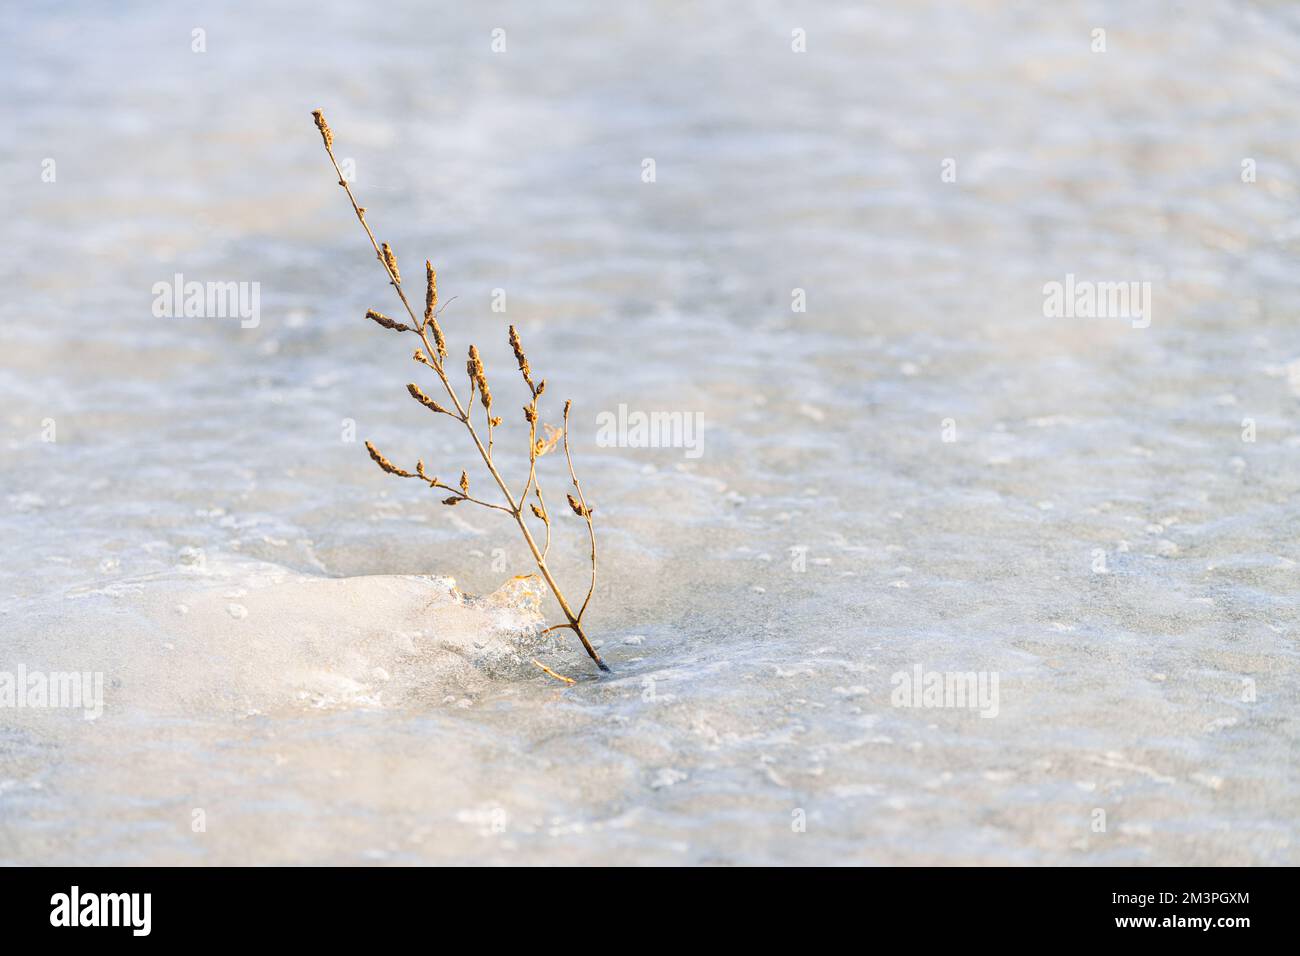 Une panicule d'herbe vient de sous la glace d'un lac gelé en fin d'après-midi en hiver. Banque D'Images